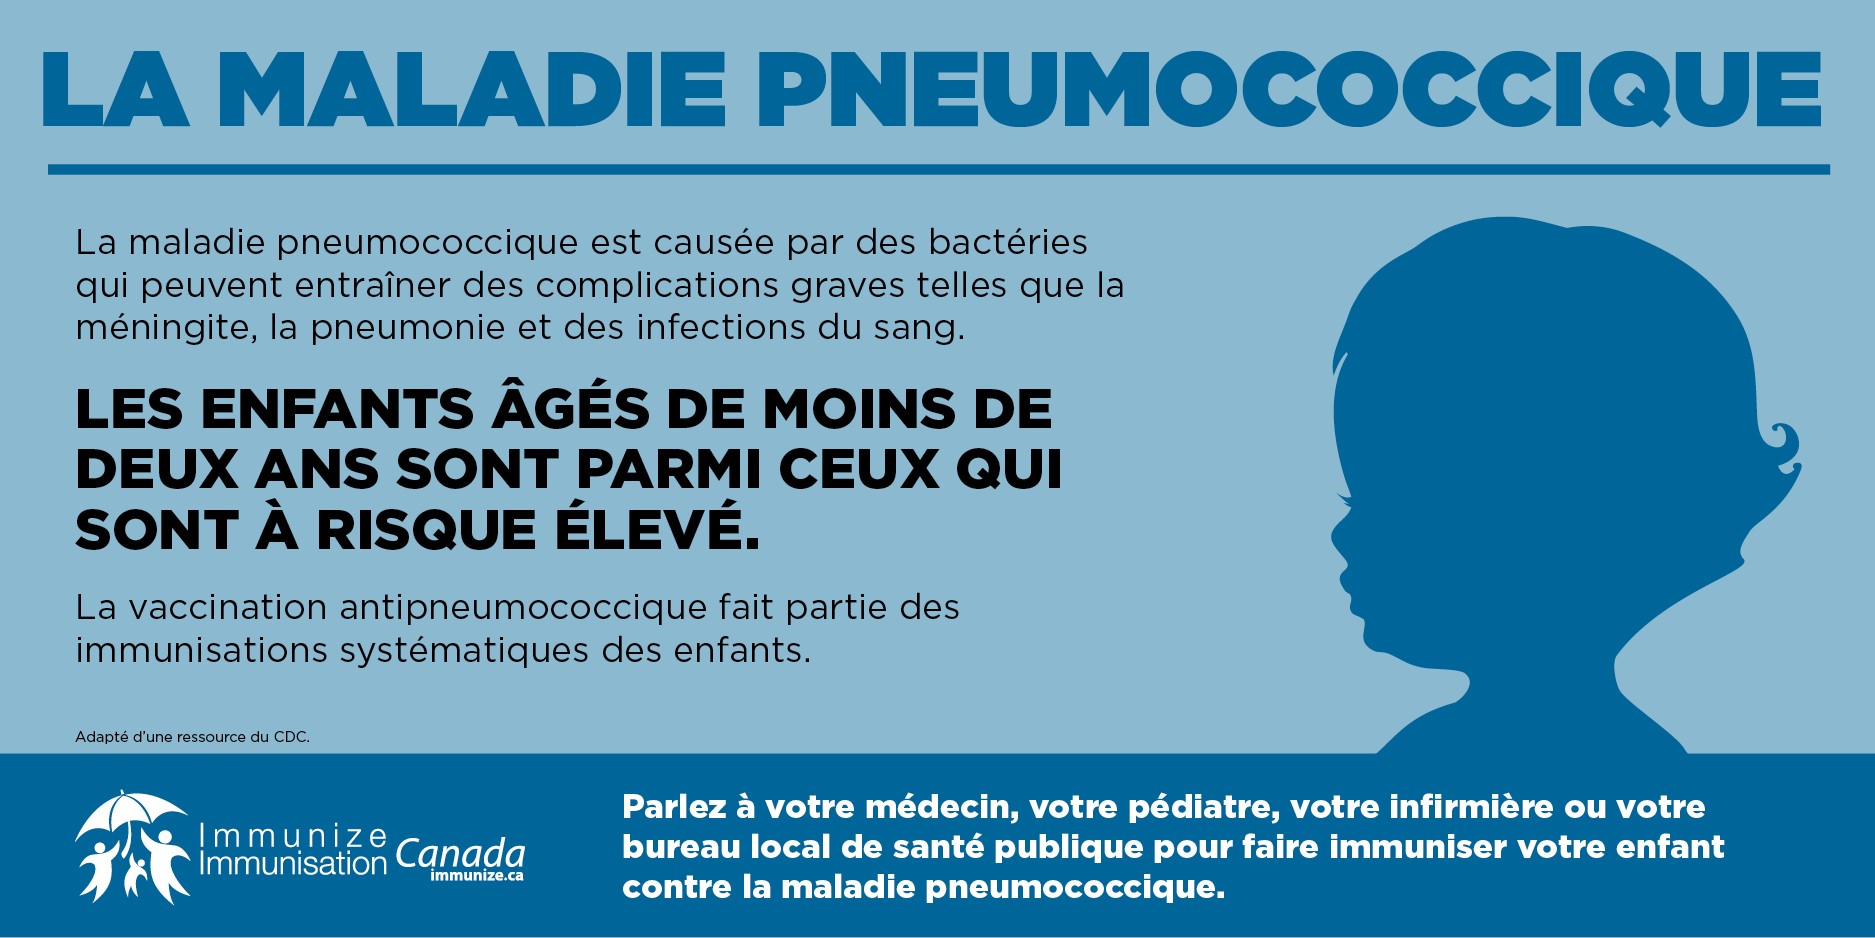 La maladie pneumococcique - les enfants de moins de deux ans (image pour médias sociaux)